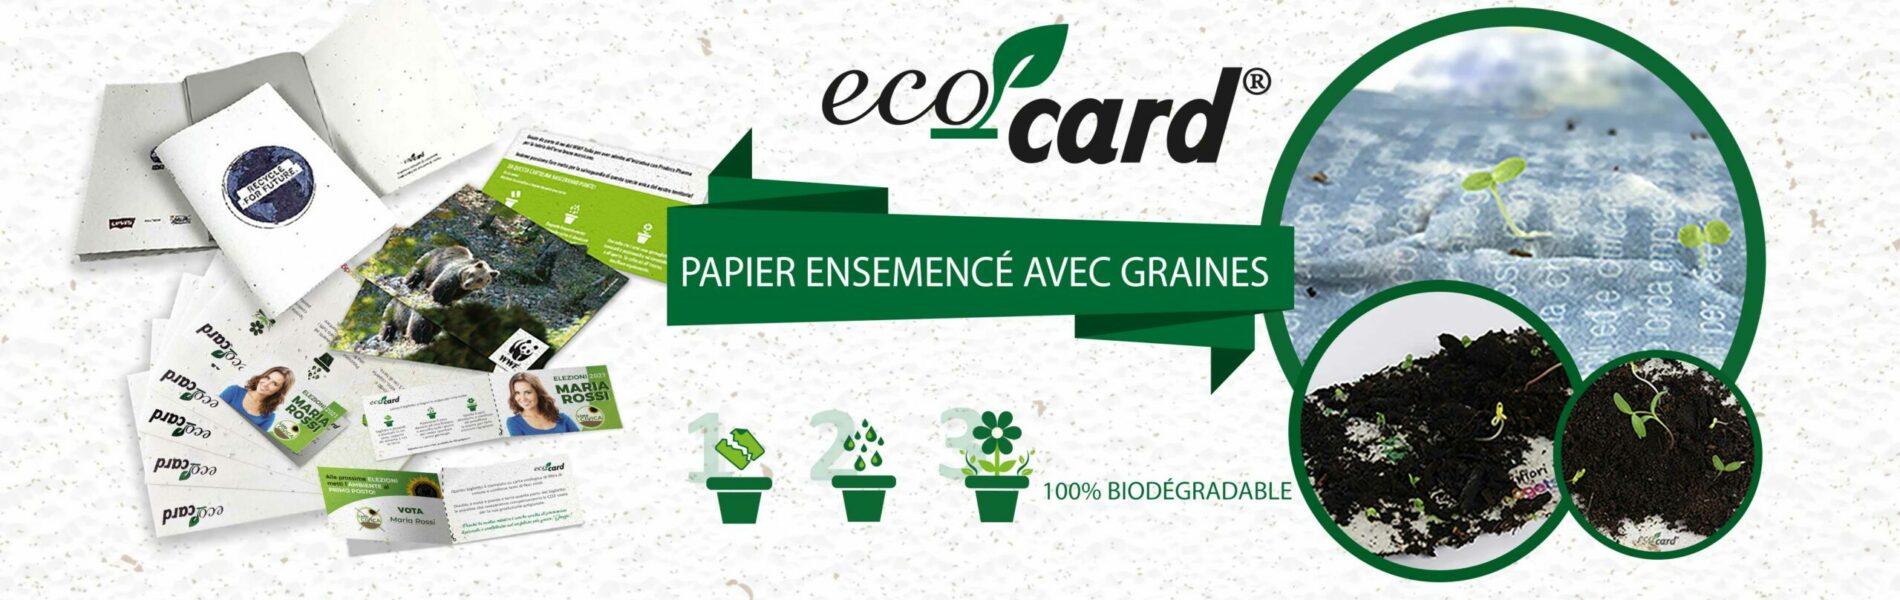 eco-card-papier-ensemence